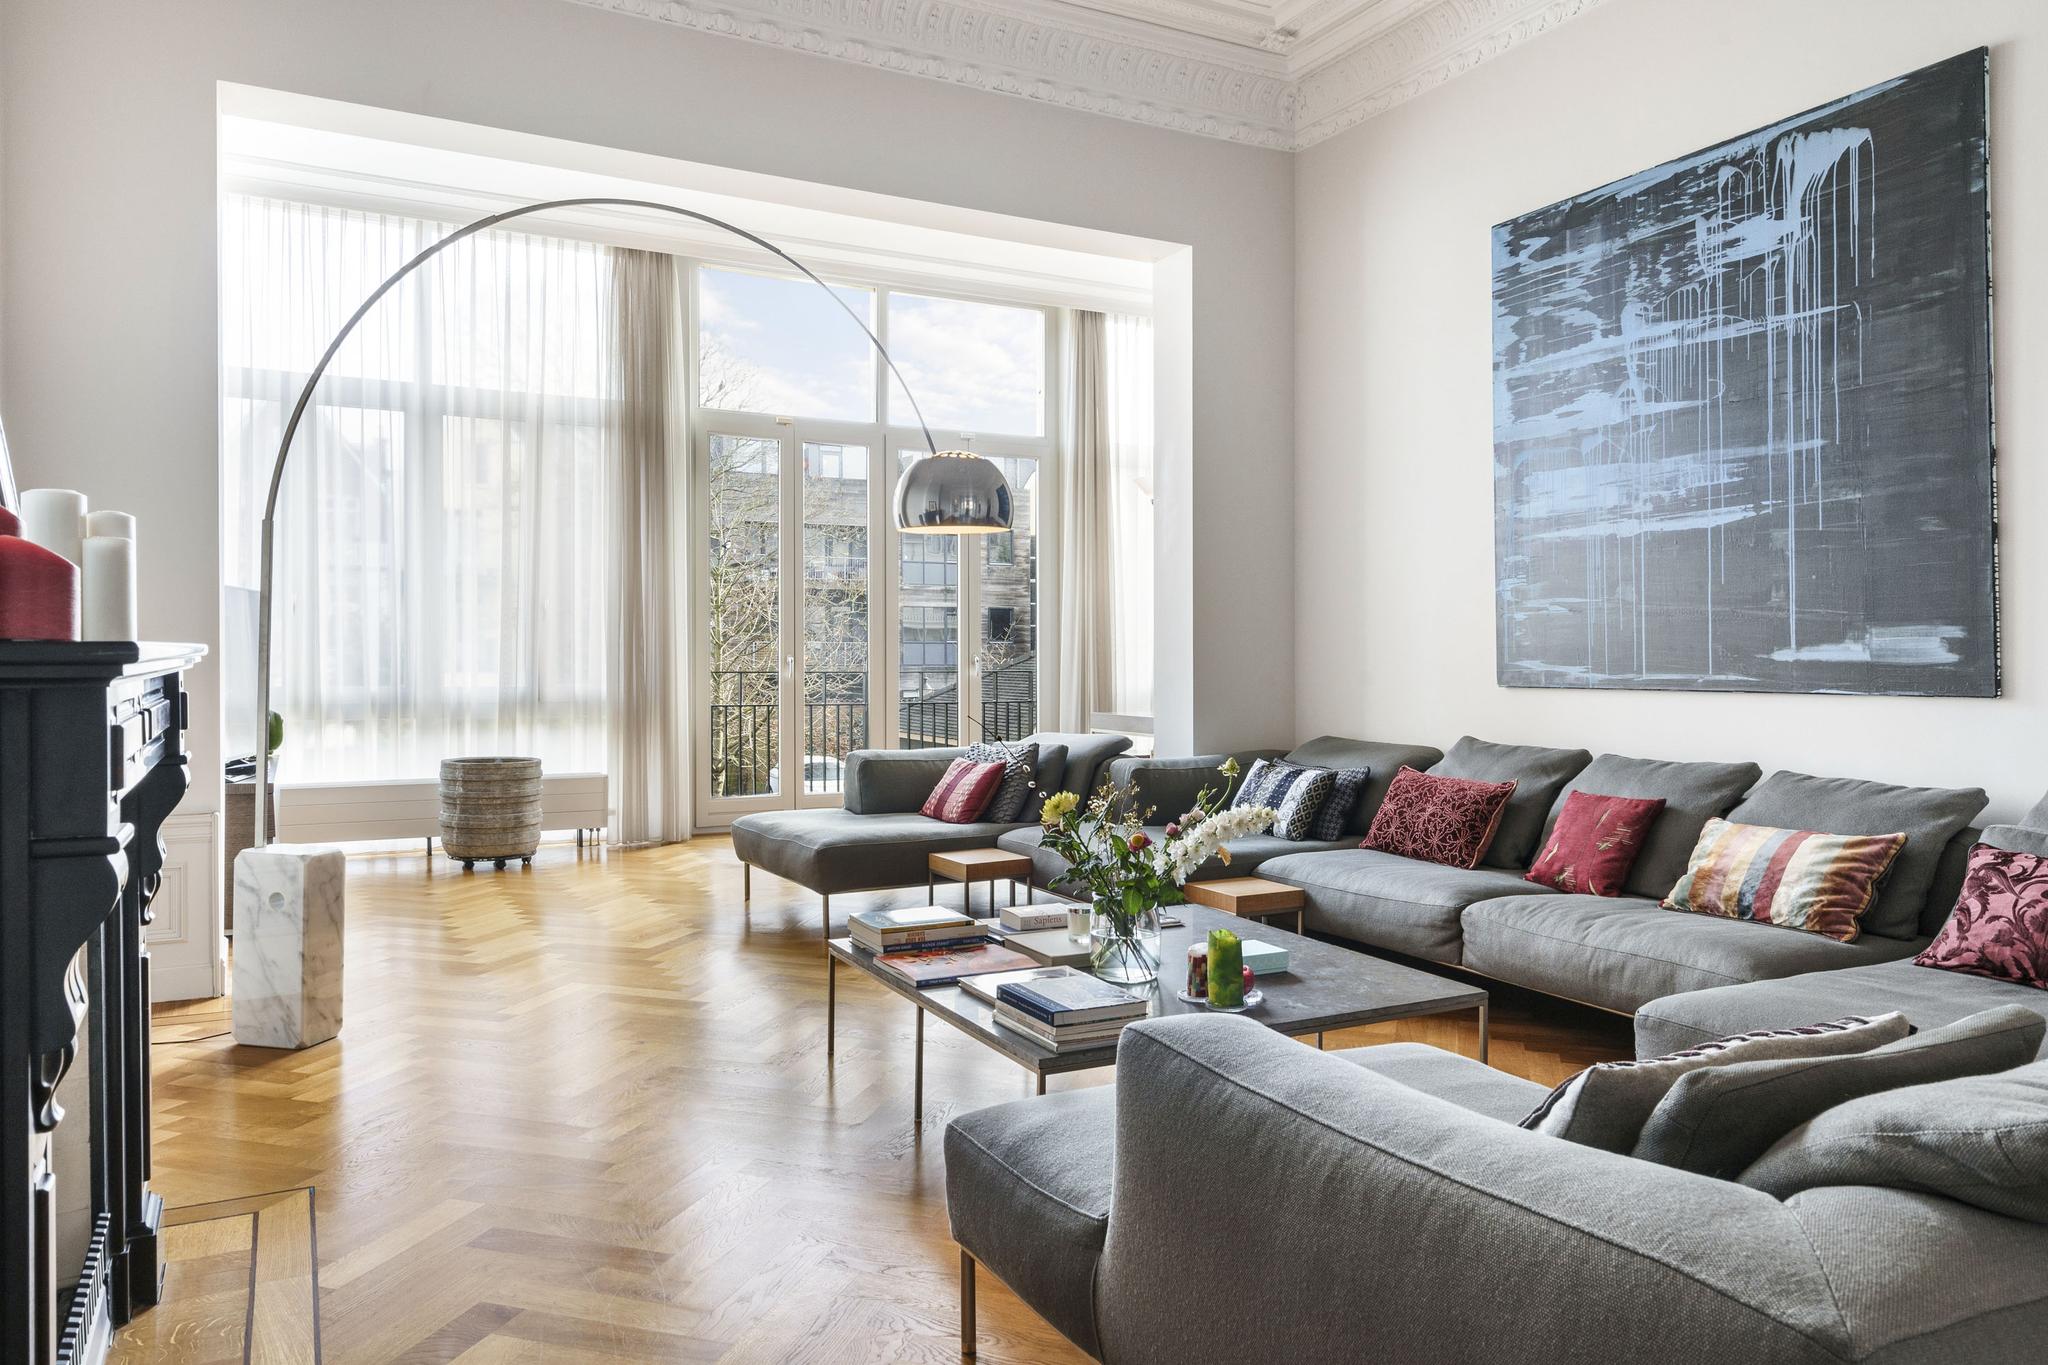 Den Haag, villa’s en luxe huizen te koop